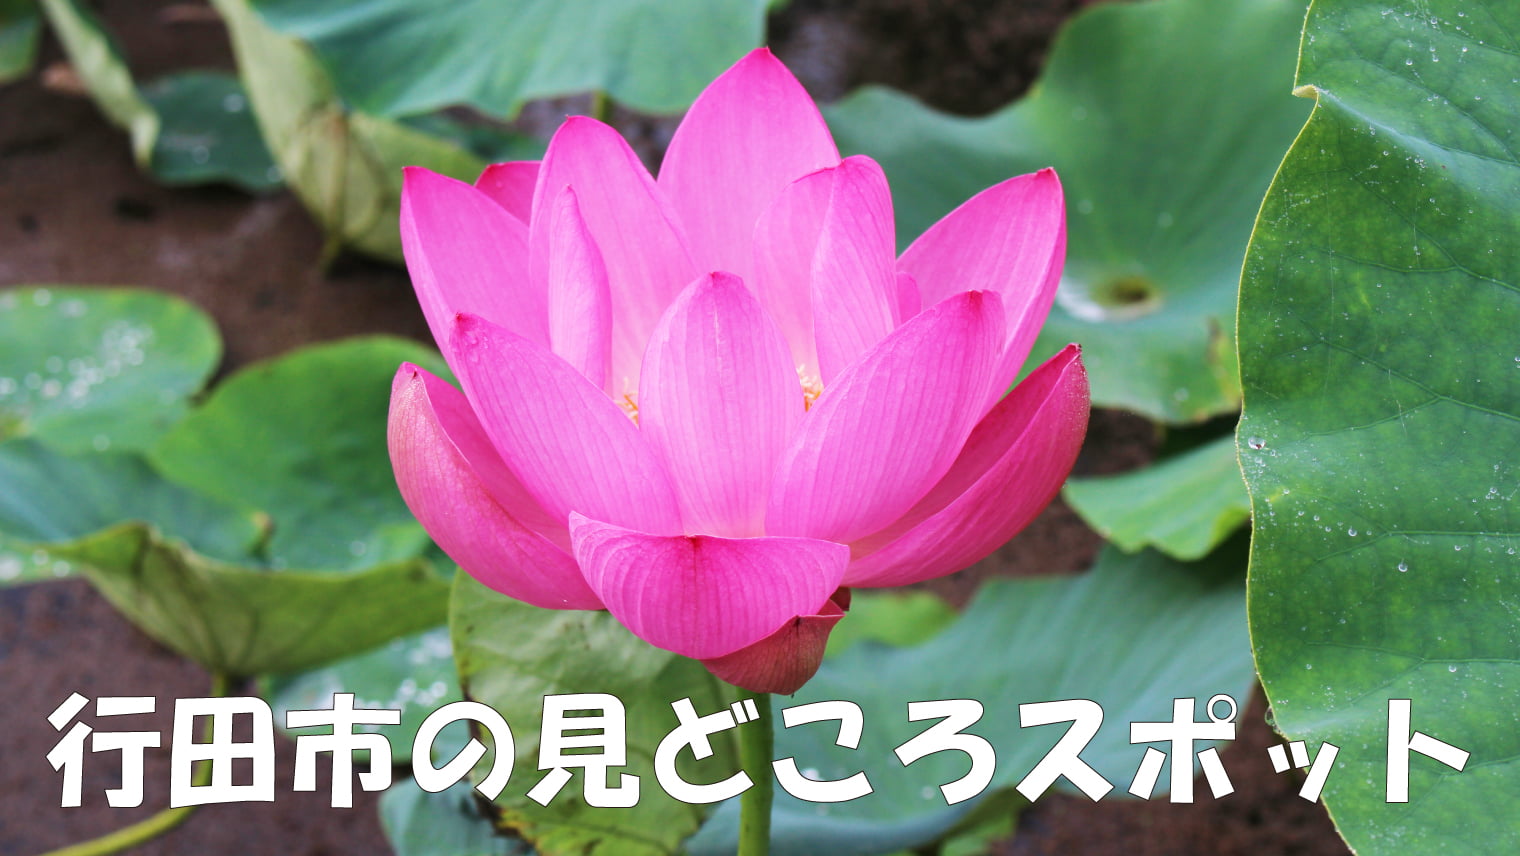 行田の「古代蓮の里」約12万株の古代蓮が咲き誇る景色と田んぼアート